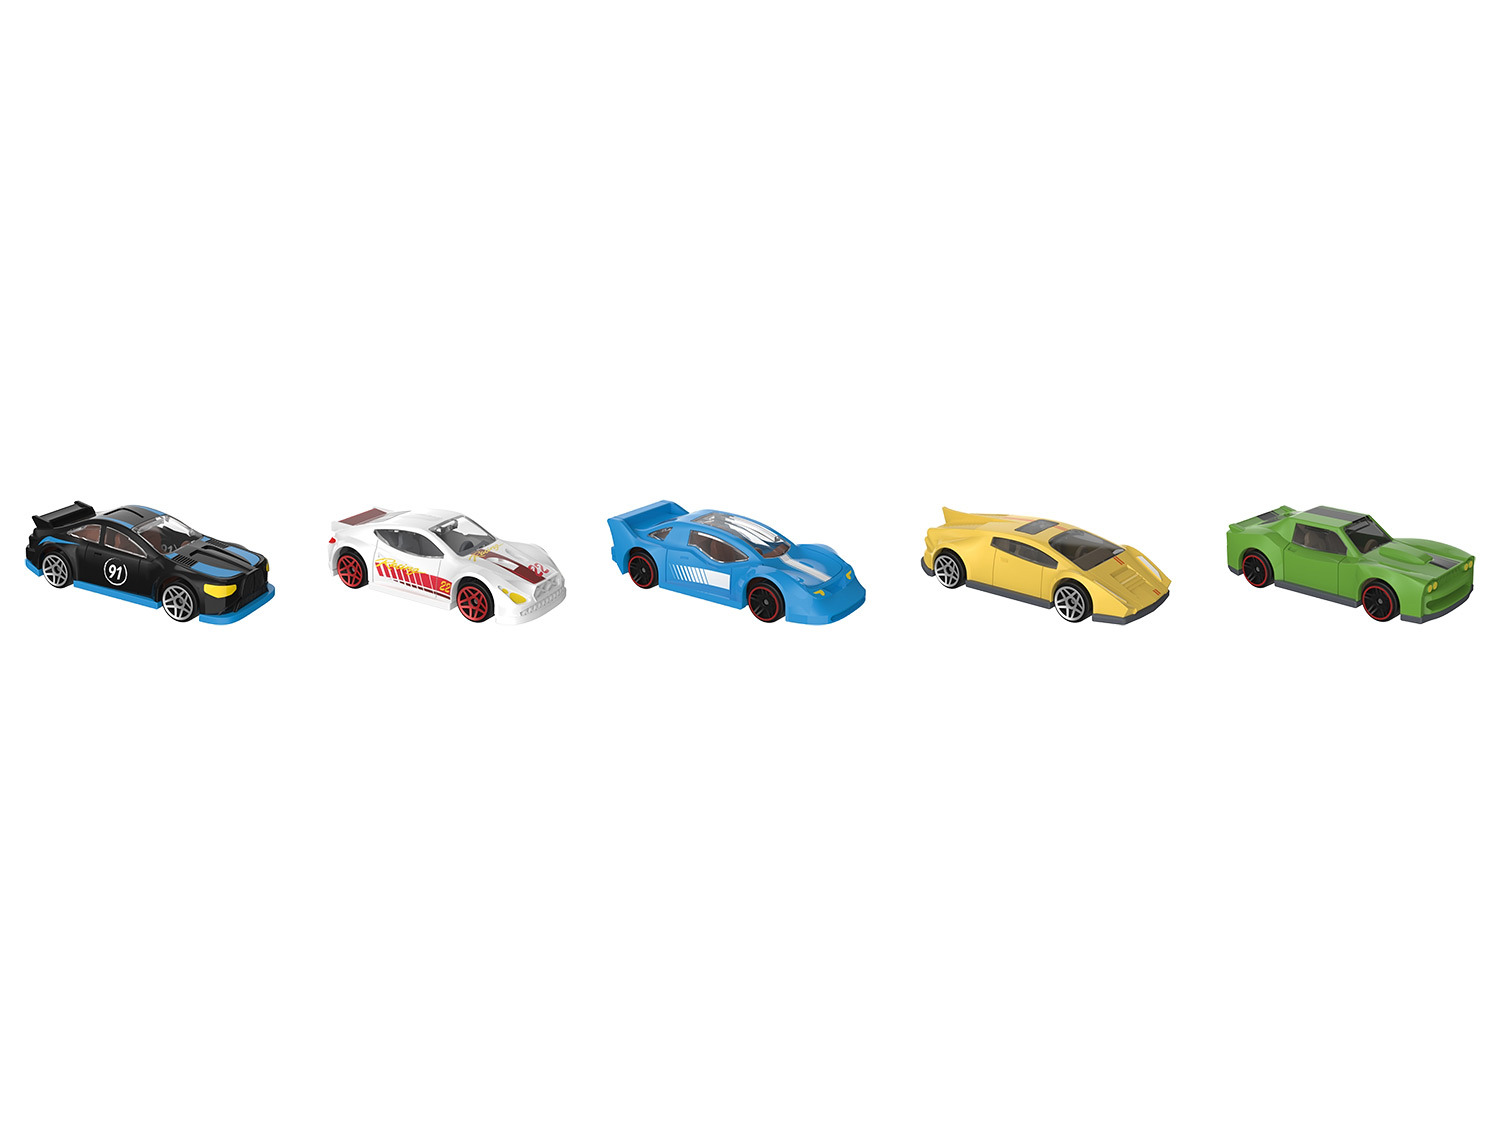 Playtive Racers City 5 mit Parkhaus, Zinkguss-Fahrzeug…